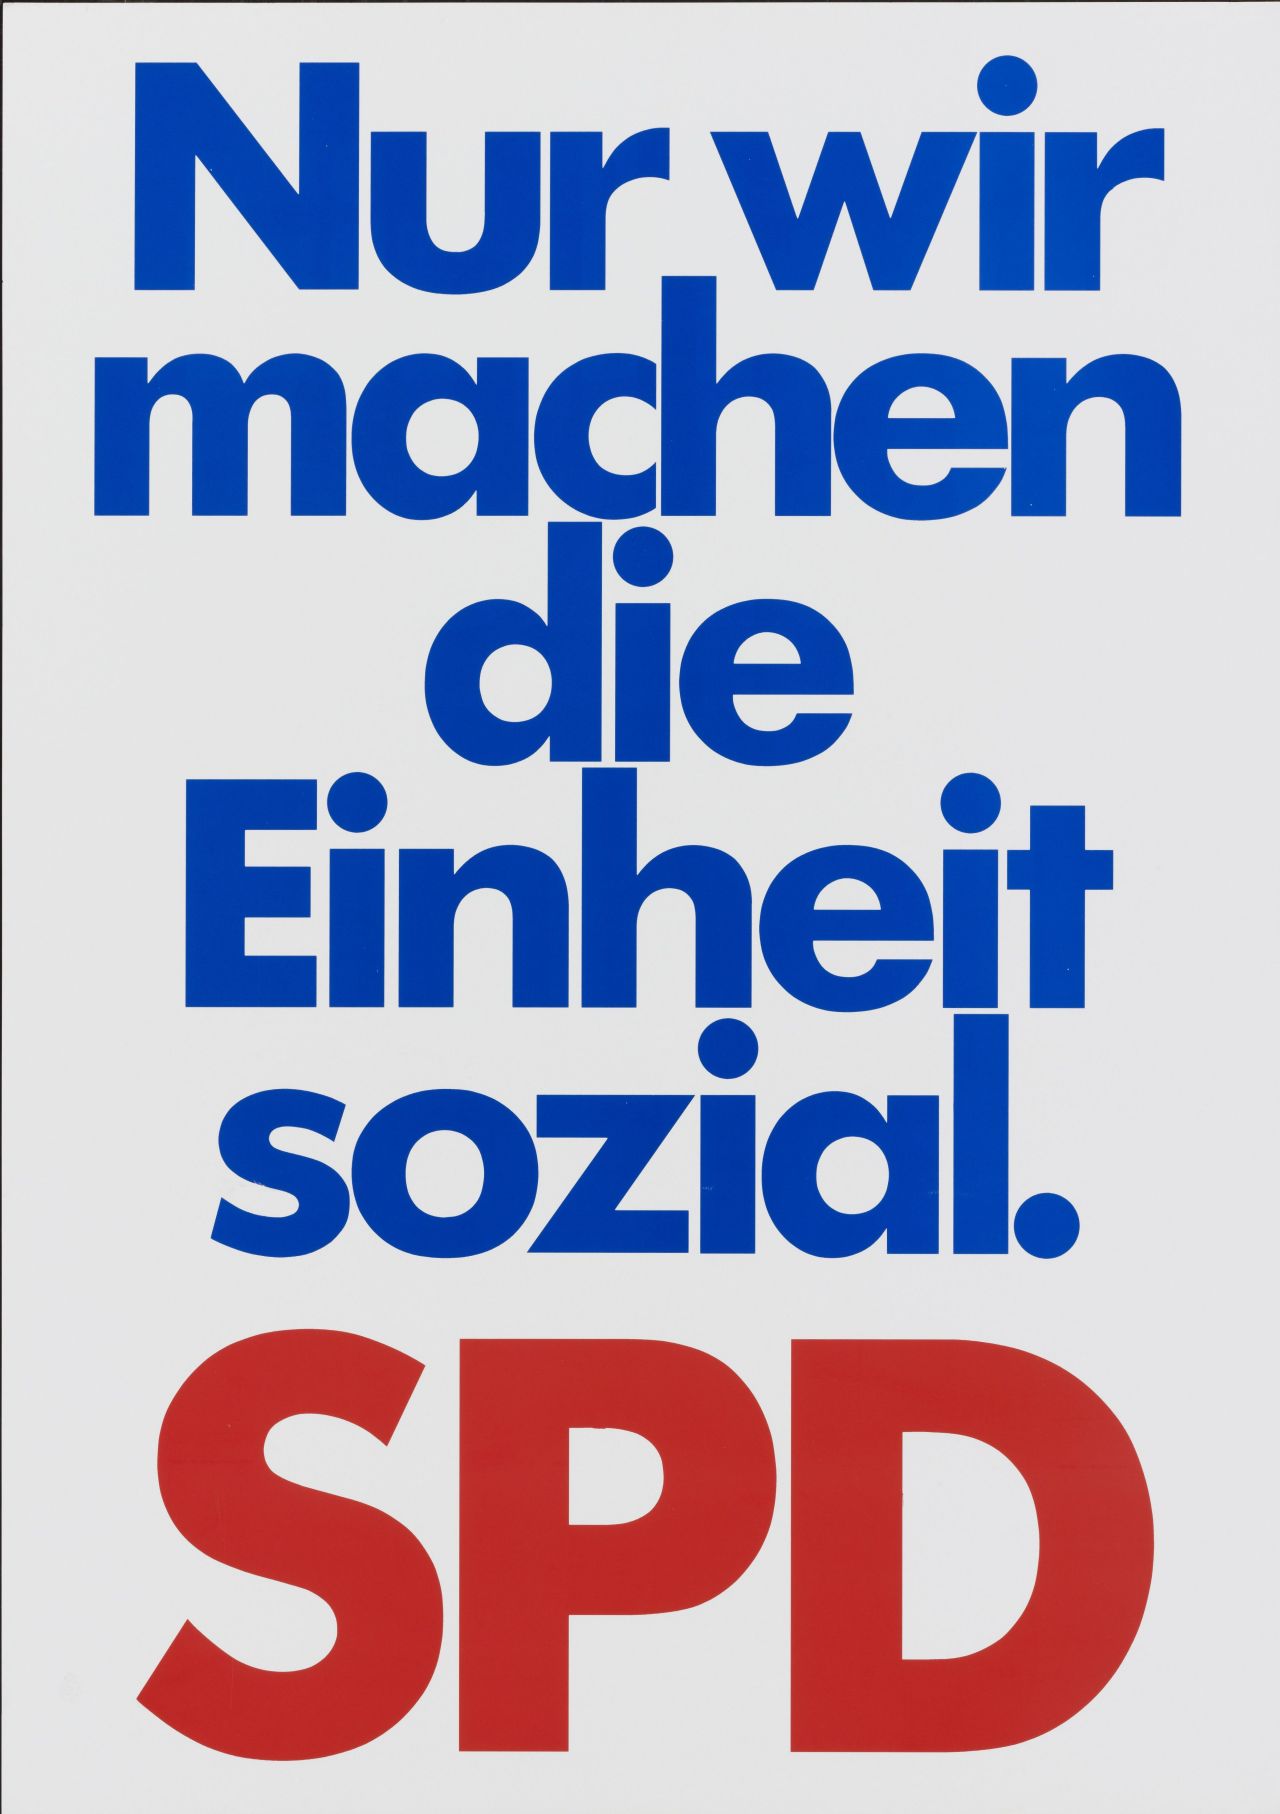 Plakat der SPD, farbiger Druck, weißer Hintergrund, blauer Text: Nur wir / machen / die / Einheit / sozial., unten roter Text: SPD.